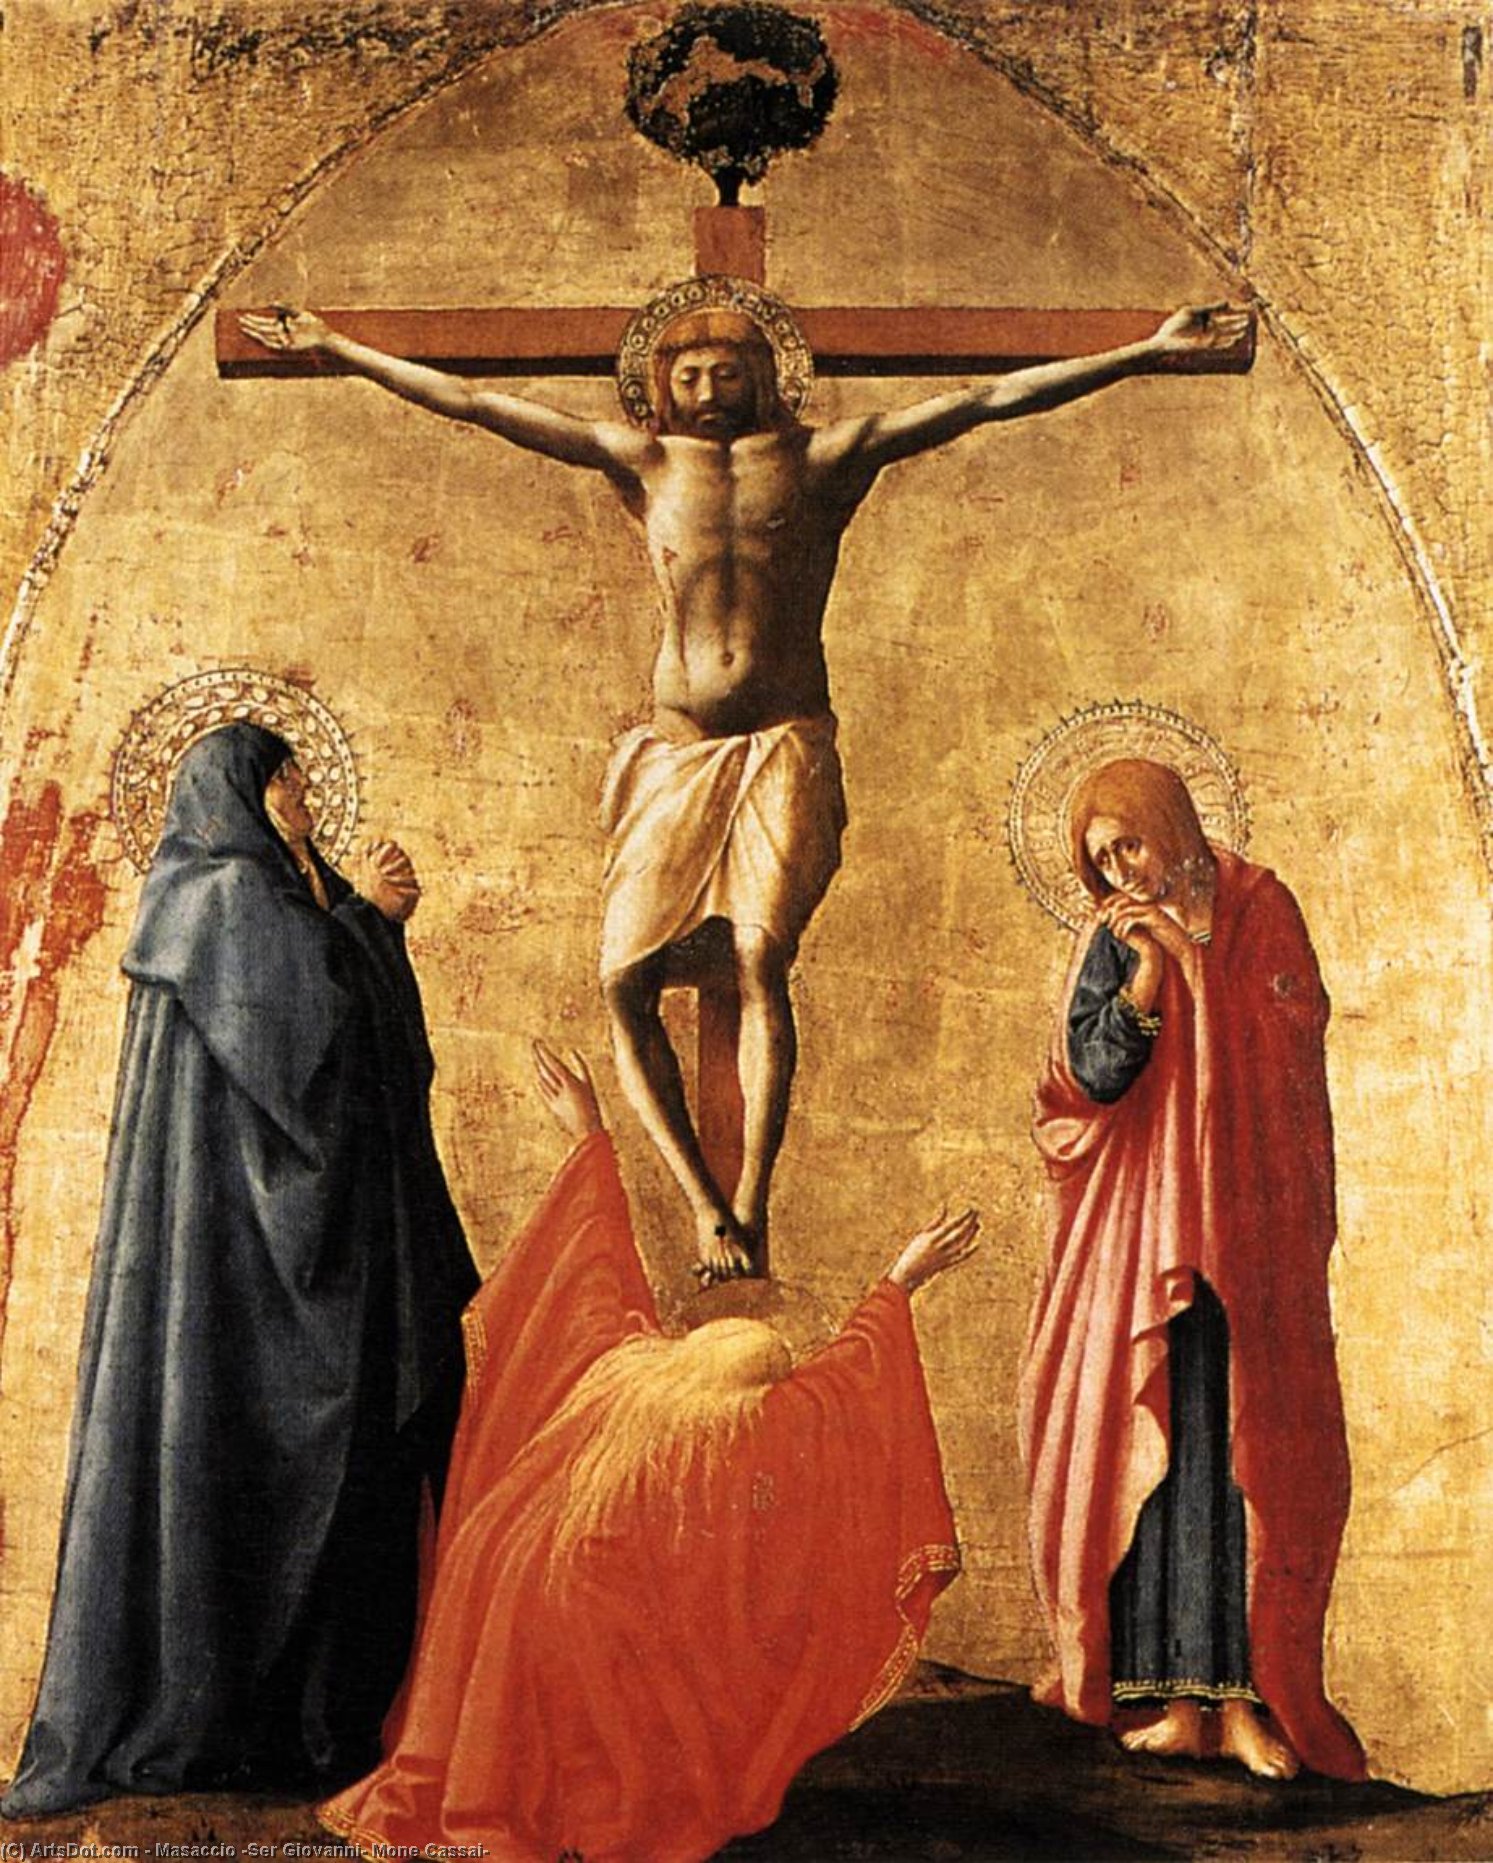 WikiOO.org - Encyclopedia of Fine Arts - Malba, Artwork Masaccio (Ser Giovanni, Mone Cassai) - Crucifixion